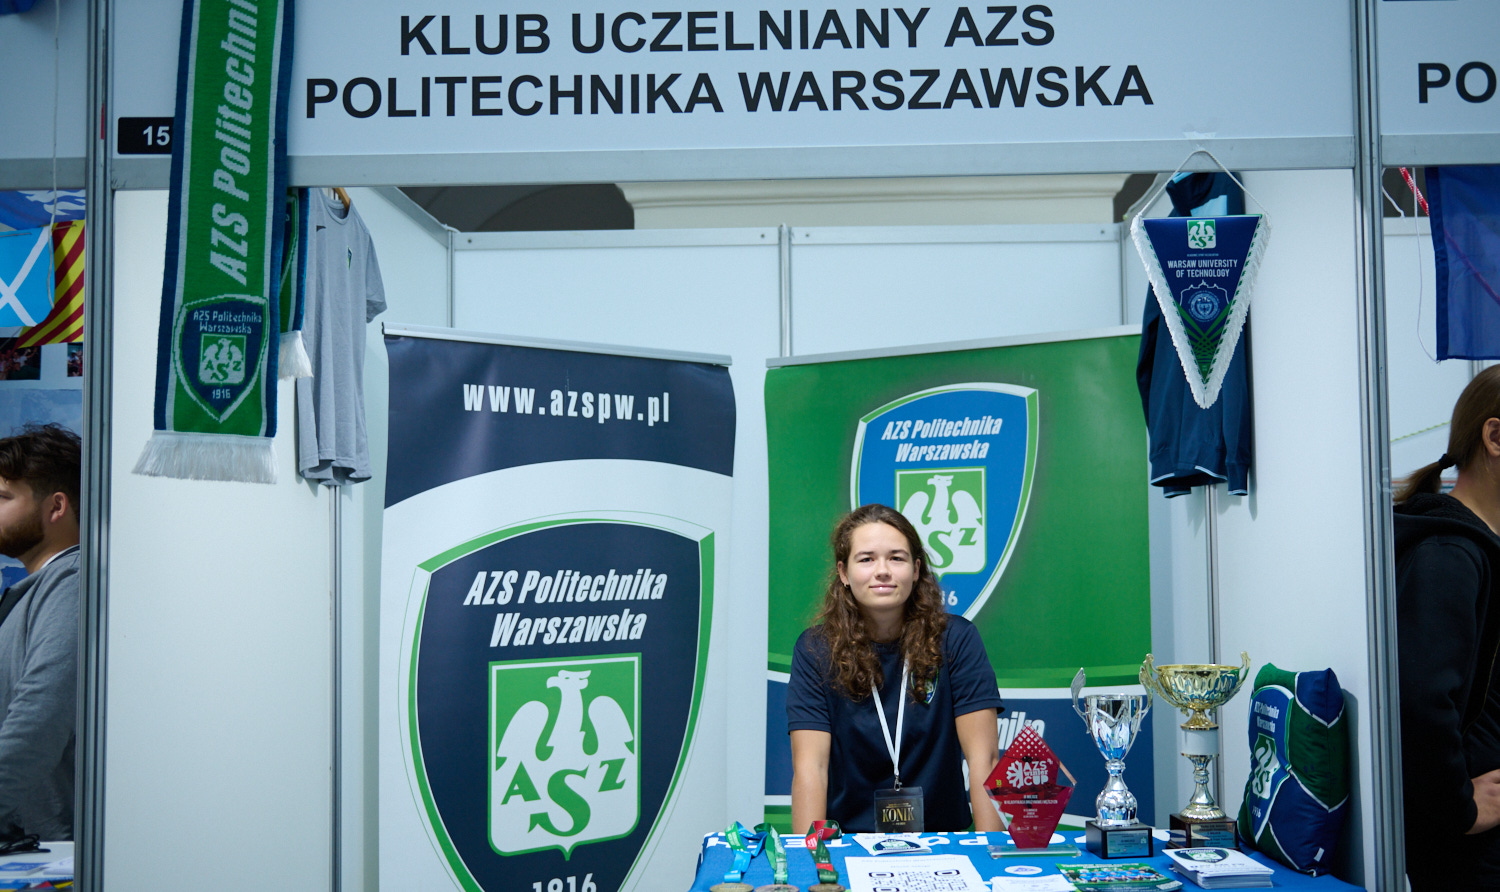 Na zdjęciu stanowisko Klubu Uczelnianego AZS PW podczas targów KONIK